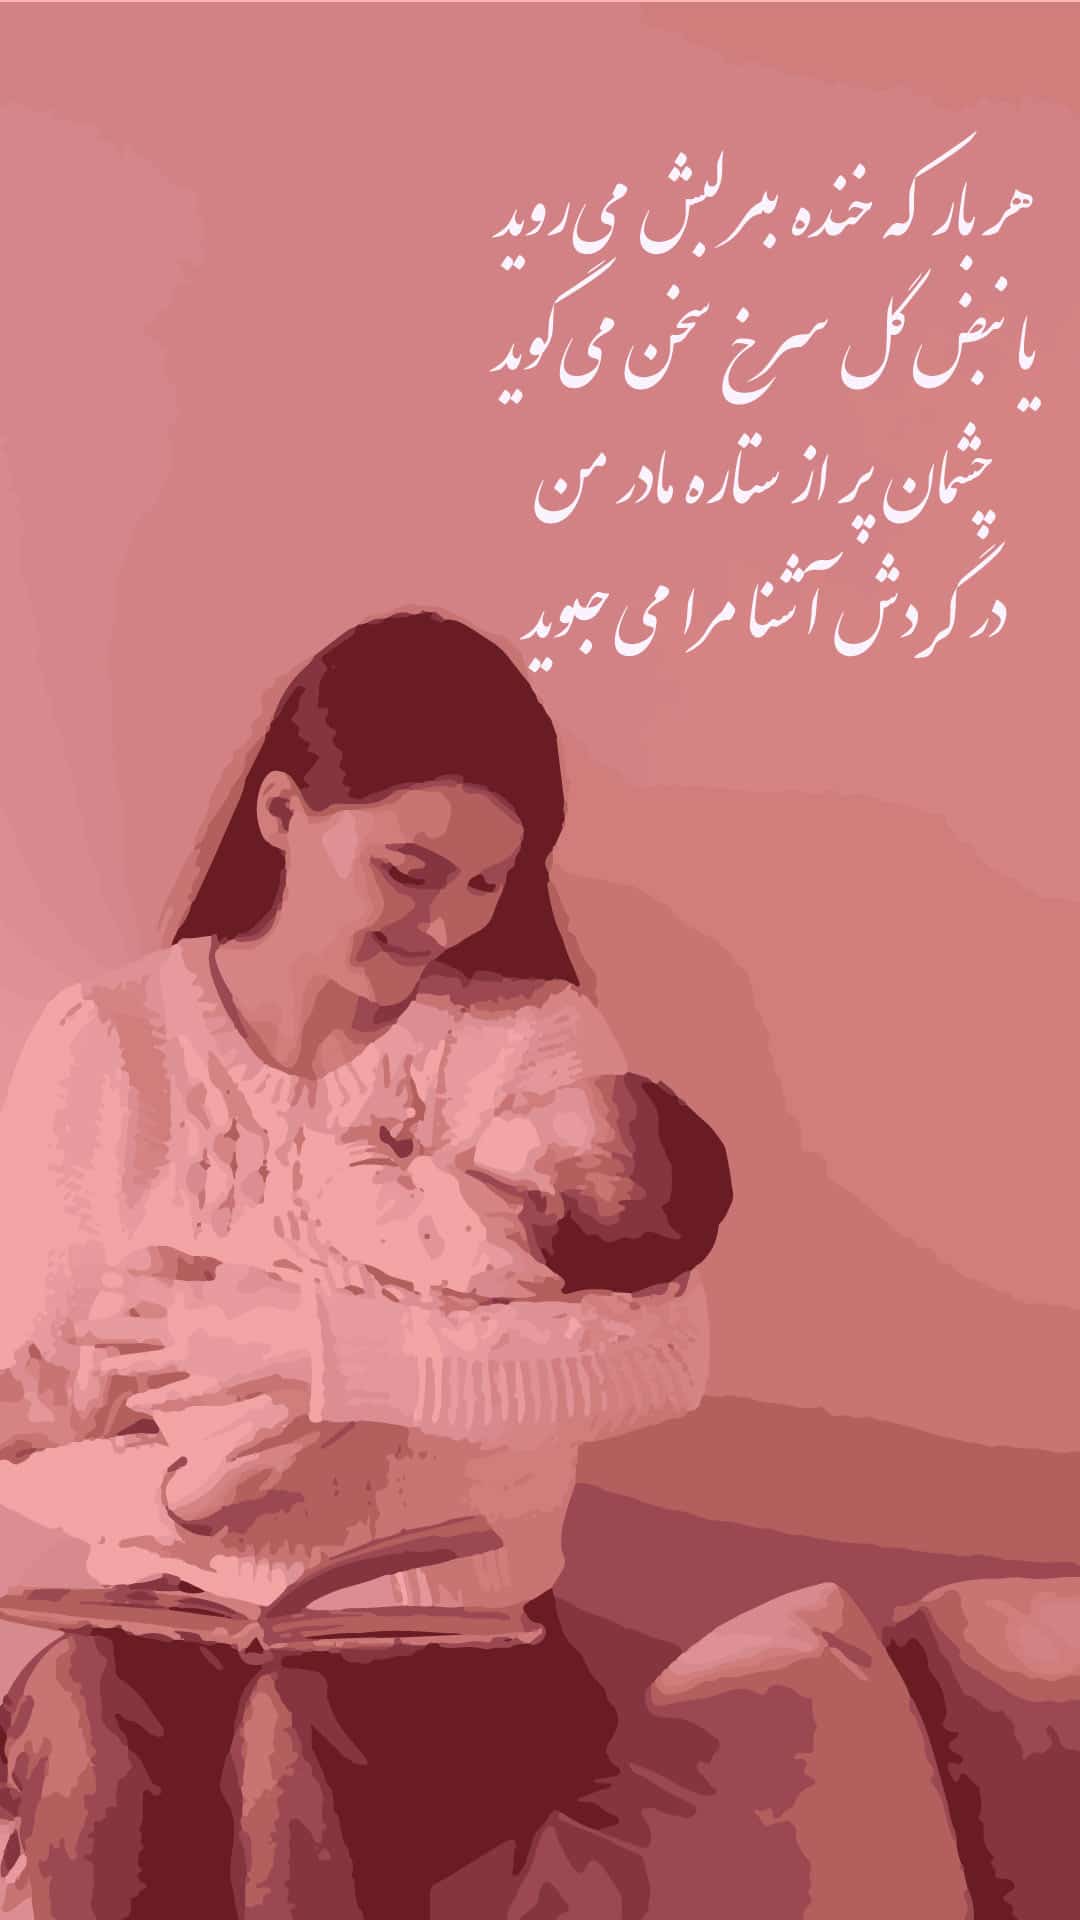 عکس برای روز مادر برای وضعیت واتساپ